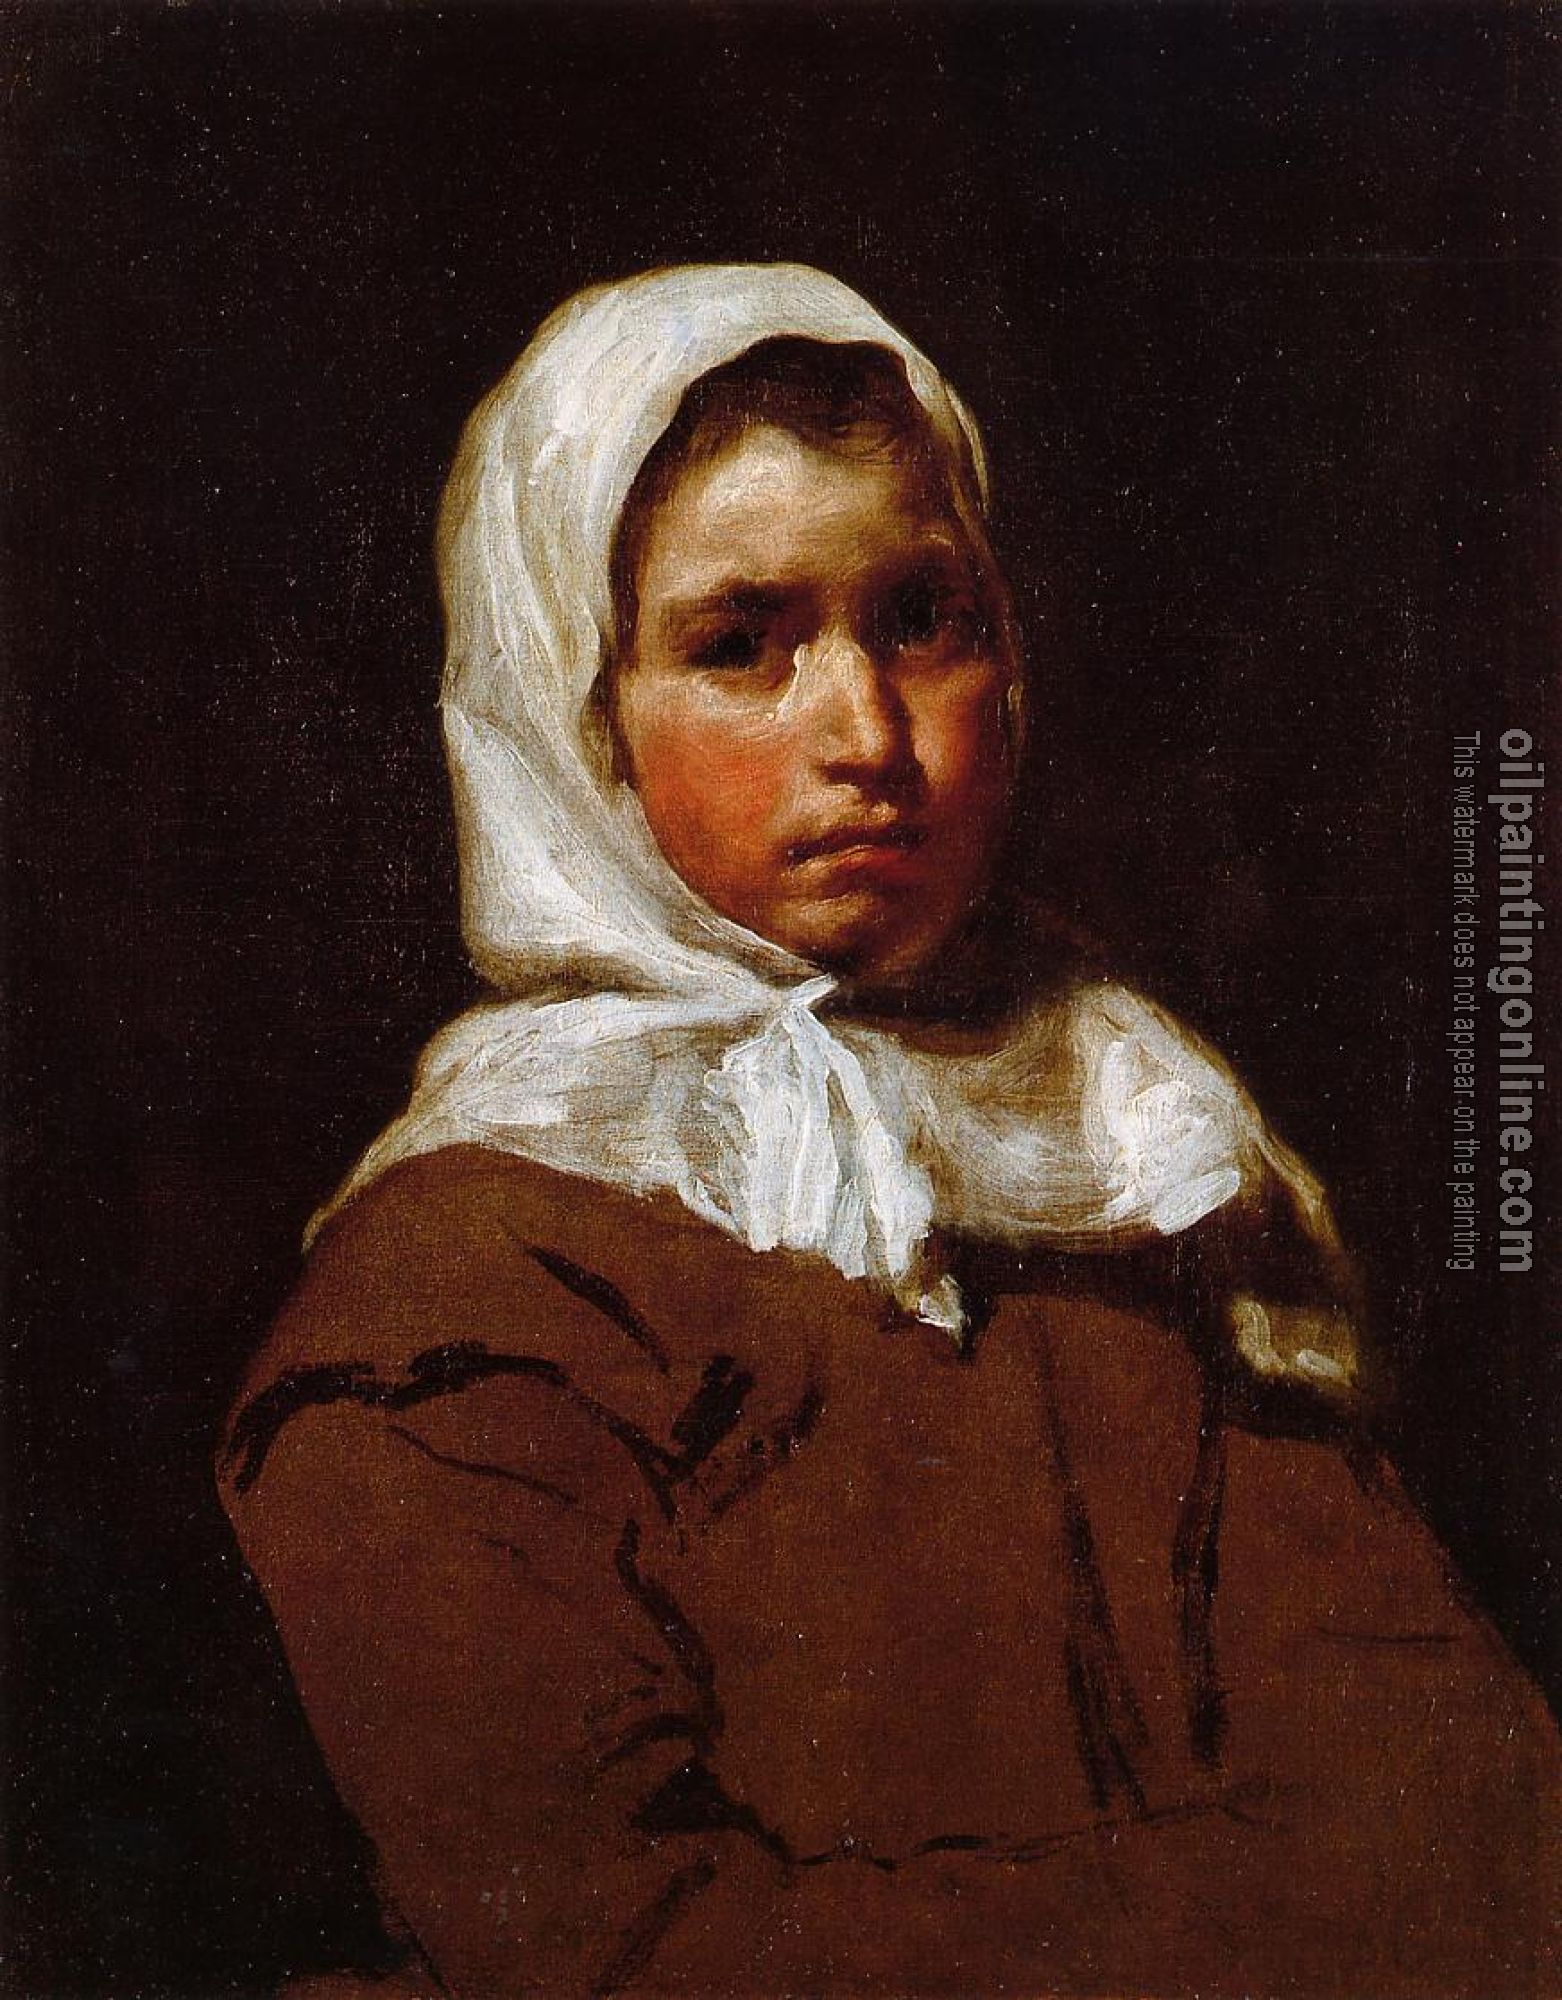 Velazquez, Diego Rodriguez de Silva - Young Peasant Girl